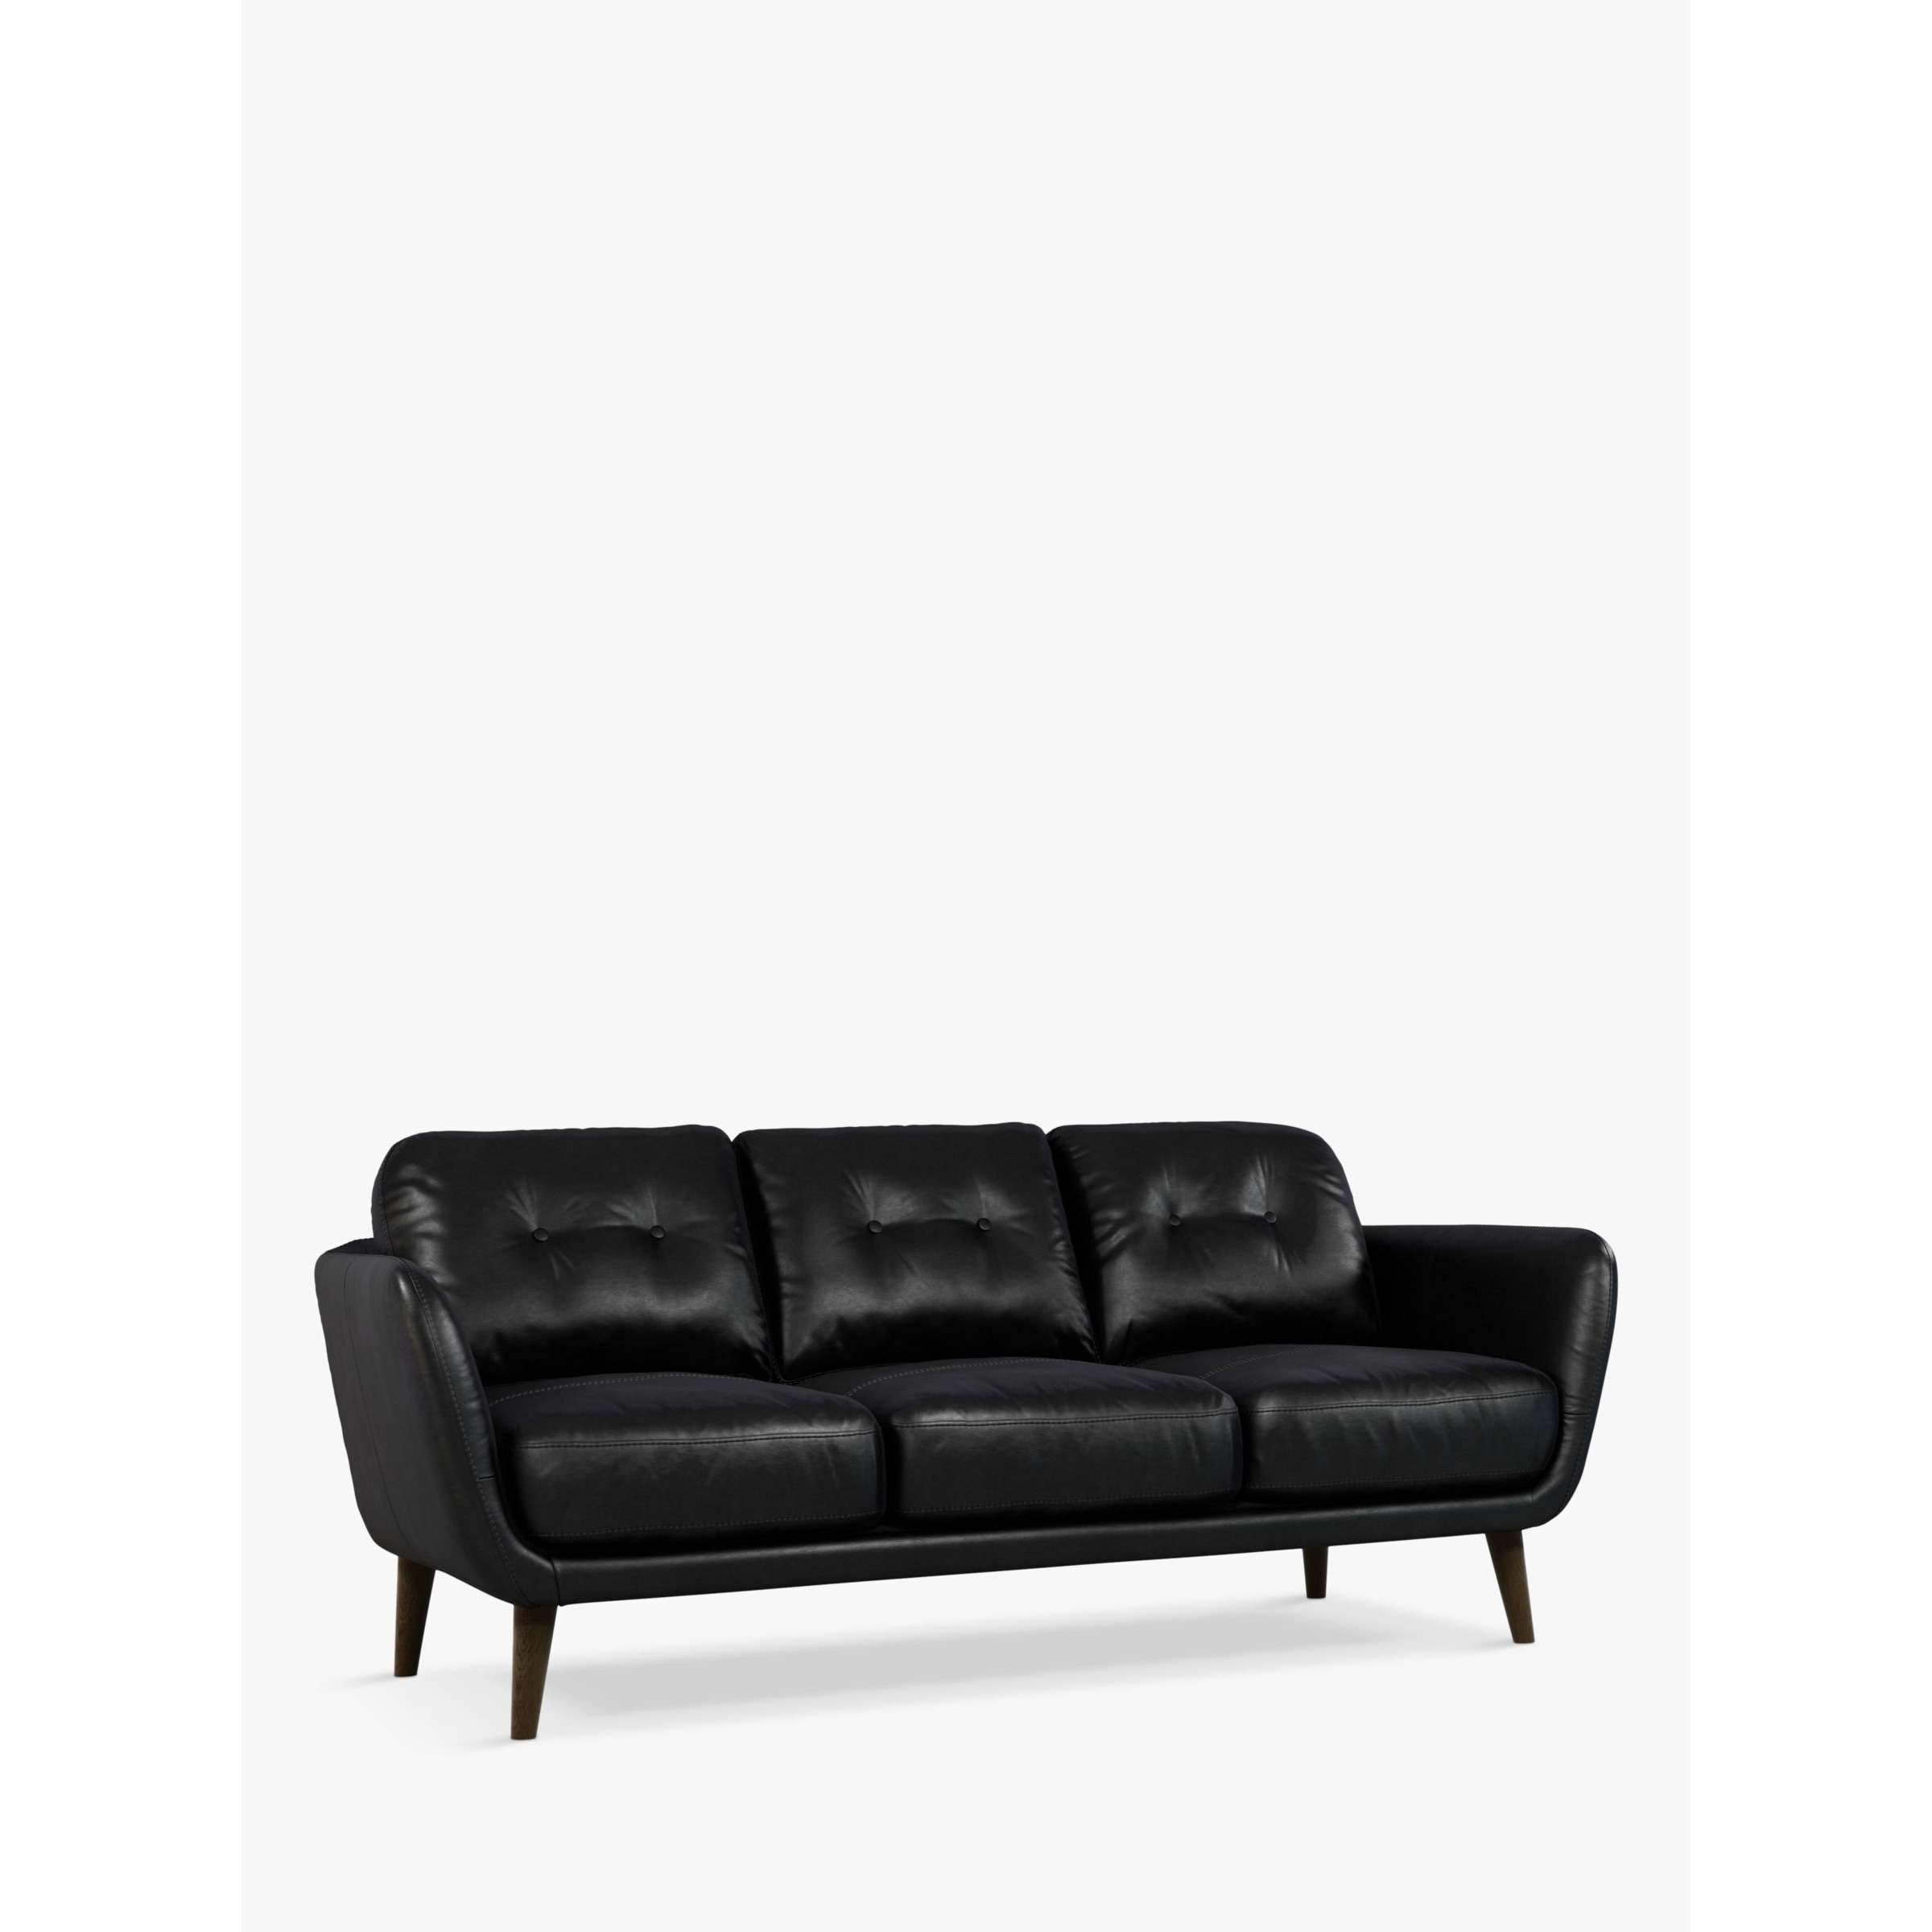 John Lewis Arlo Large 3 Seater Leather Sofa, Dark Leg - image 1